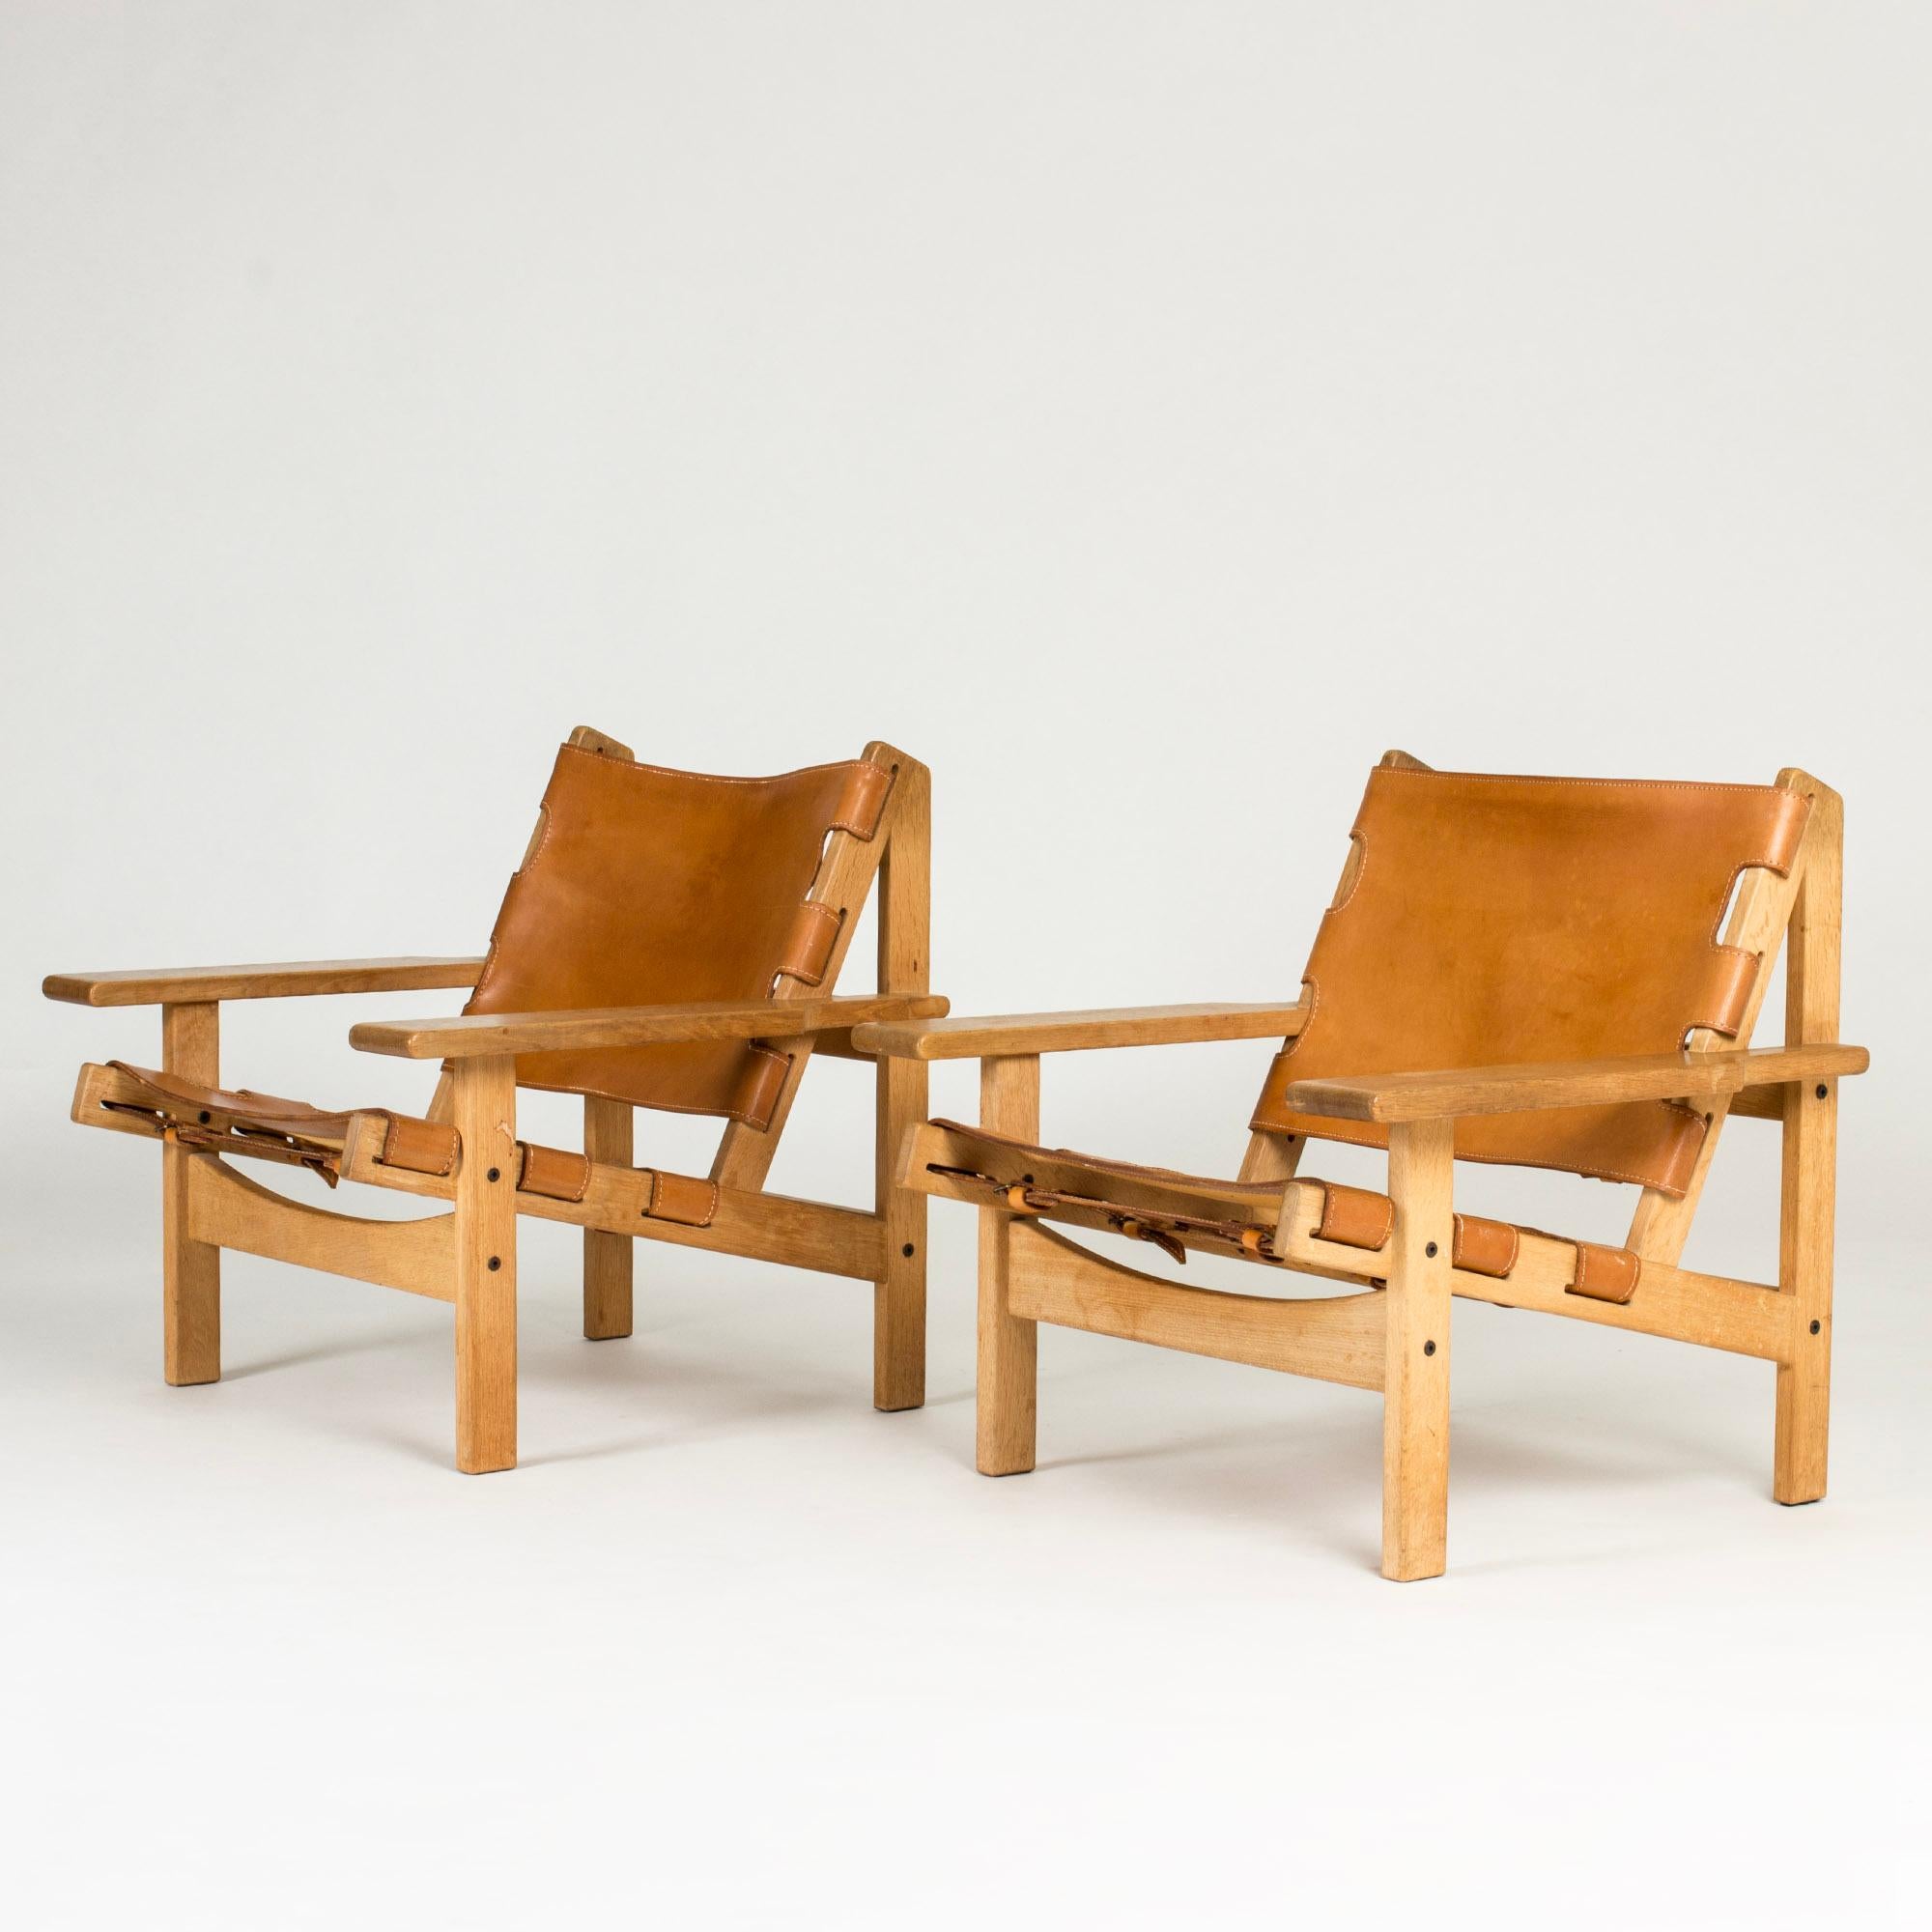 Zwei coole Jagdstühle von Kurt Østervig, Modell 168. Hergestellt aus Eichenholz mit klaren Linien, cognacfarbenem Leder und dekorativen Riemen auf der Rückseite.